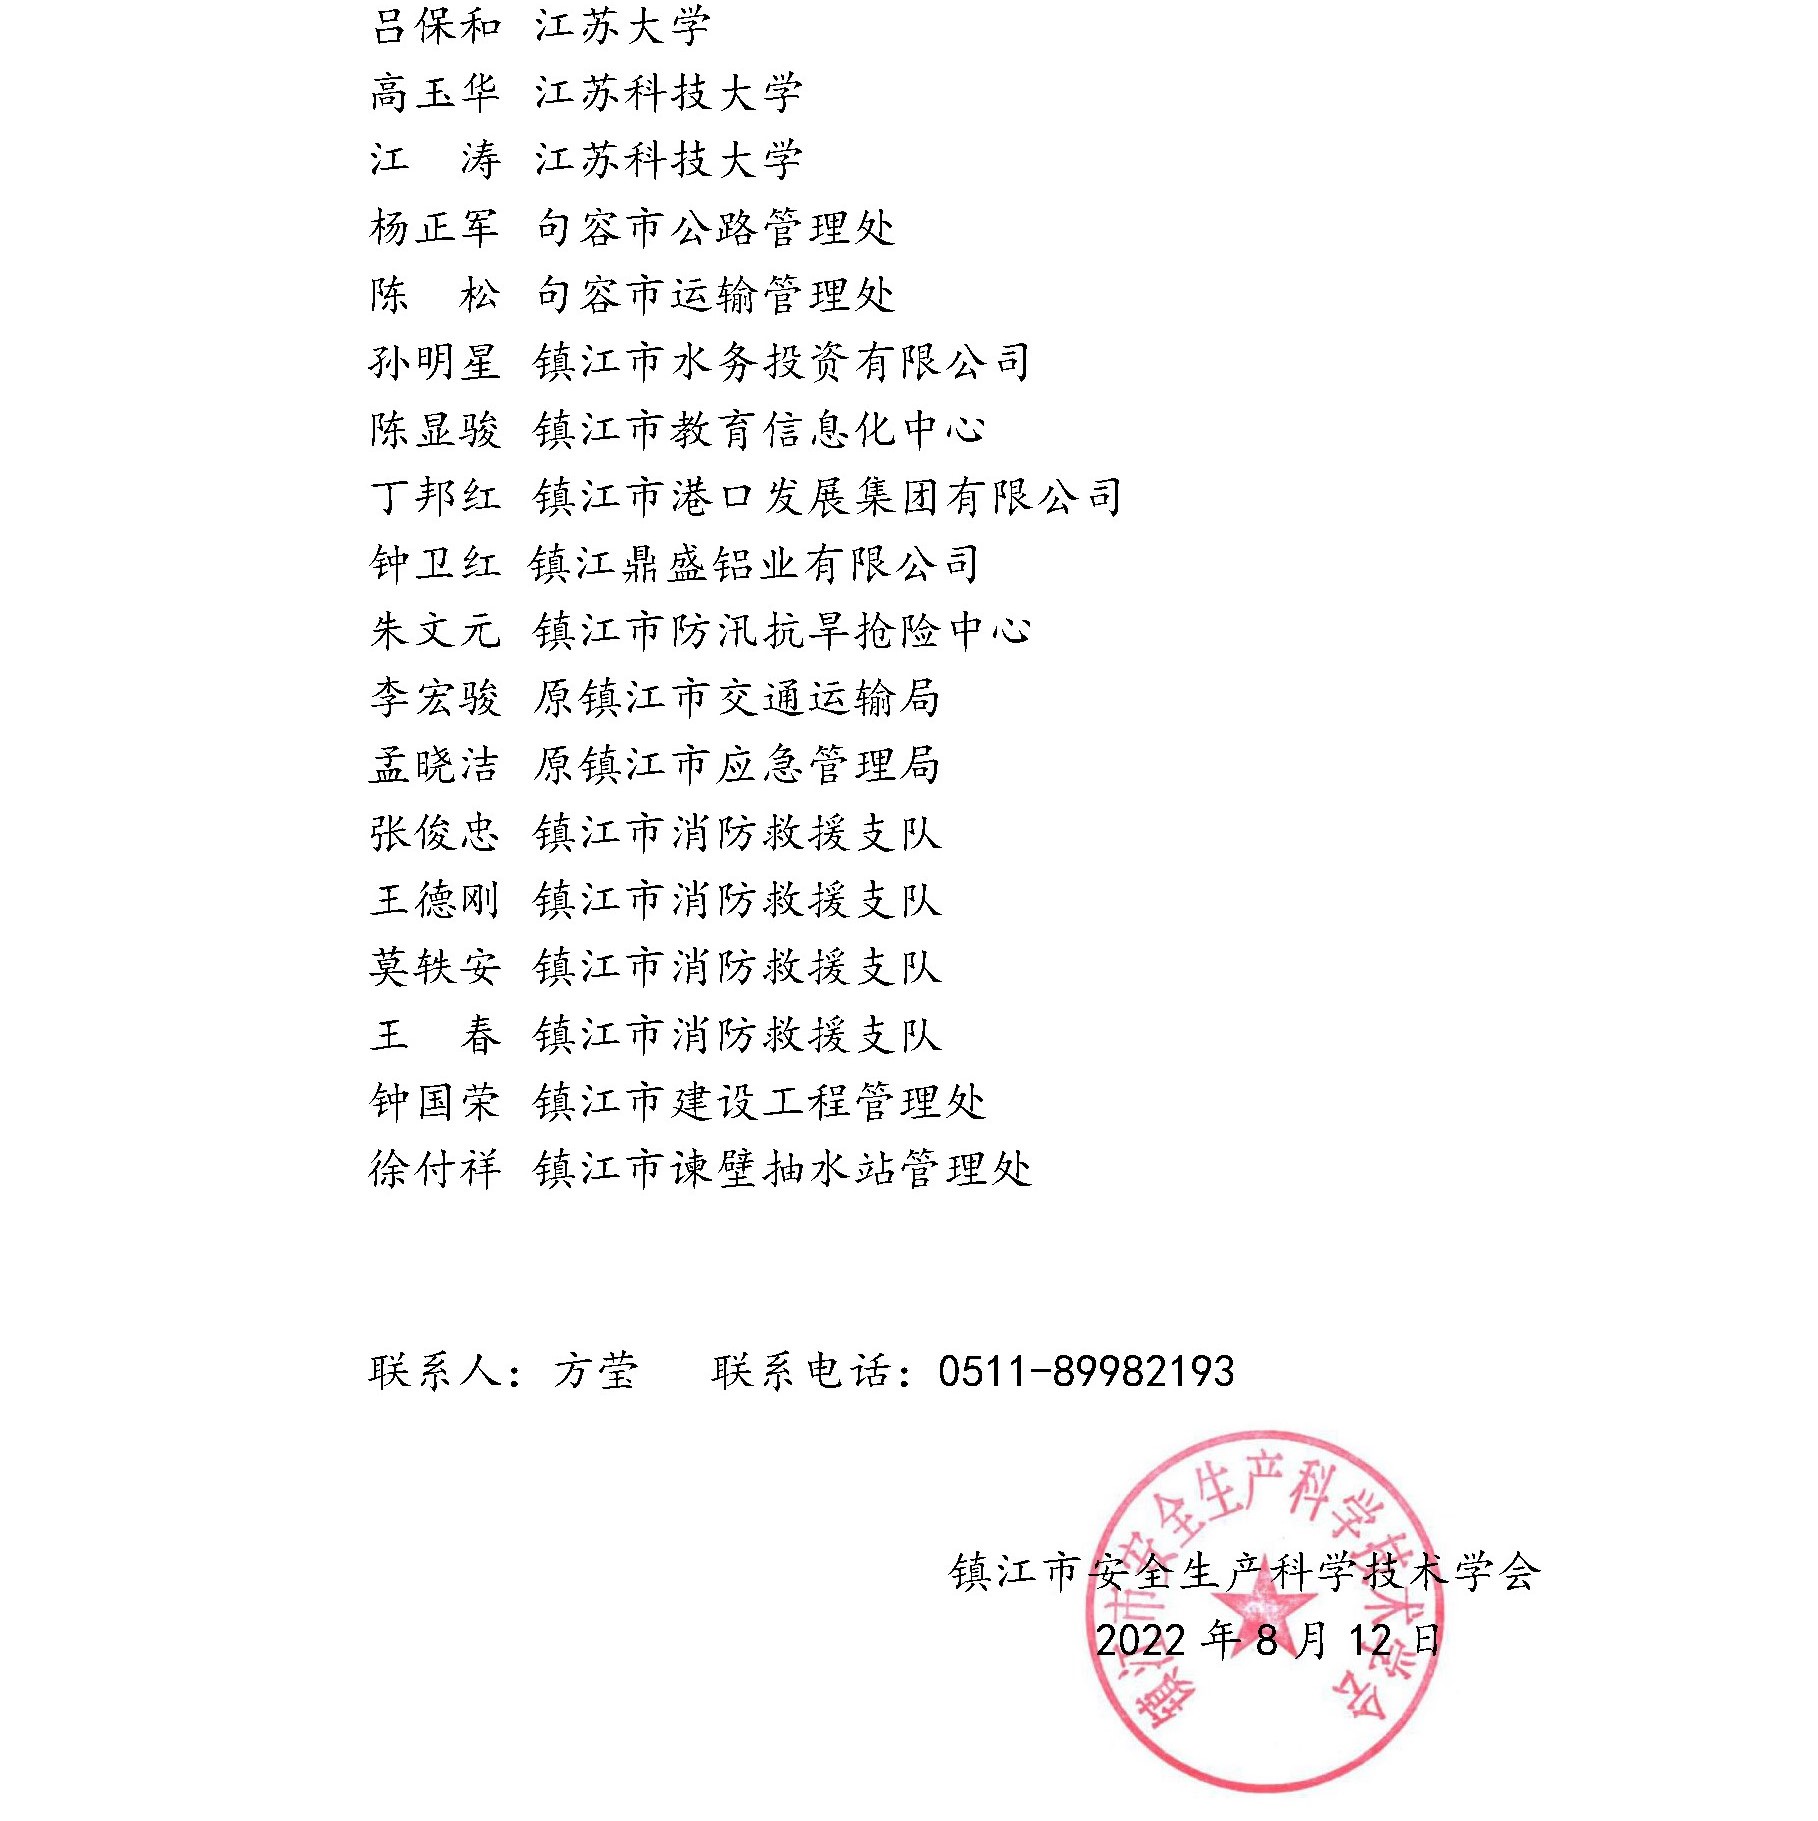 镇江市安全生产科学技术学会专家委员会成员名单公示(图7)